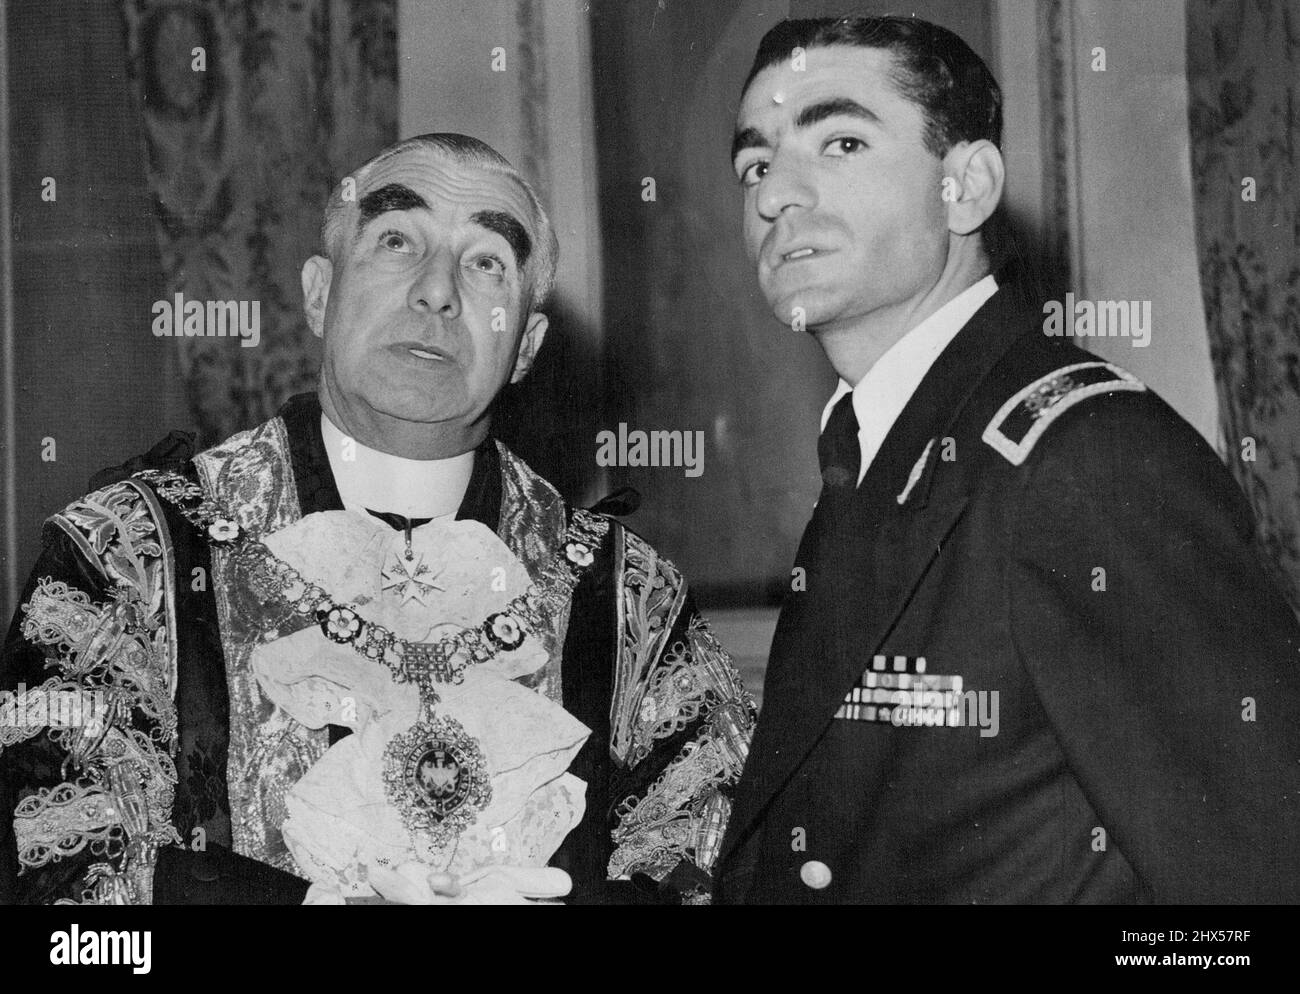 Shah von Persien trifft Londons Oberbürgermeister -- Der Schah von Persien - Mohammad Reza Pahlavi - (rechts), der auf einem halbprivaten Besuch in England ist, fotografiert mit dem Oberbürgermeister von London, Sir Frederick Wells (links) während eines Besuchs im Herrenhaus, der offiziellen Residenz des Oberbürgermeisters, als der Schah zum Mittagessen unterhalten wurde. 23. Juli 1948. Stockfoto